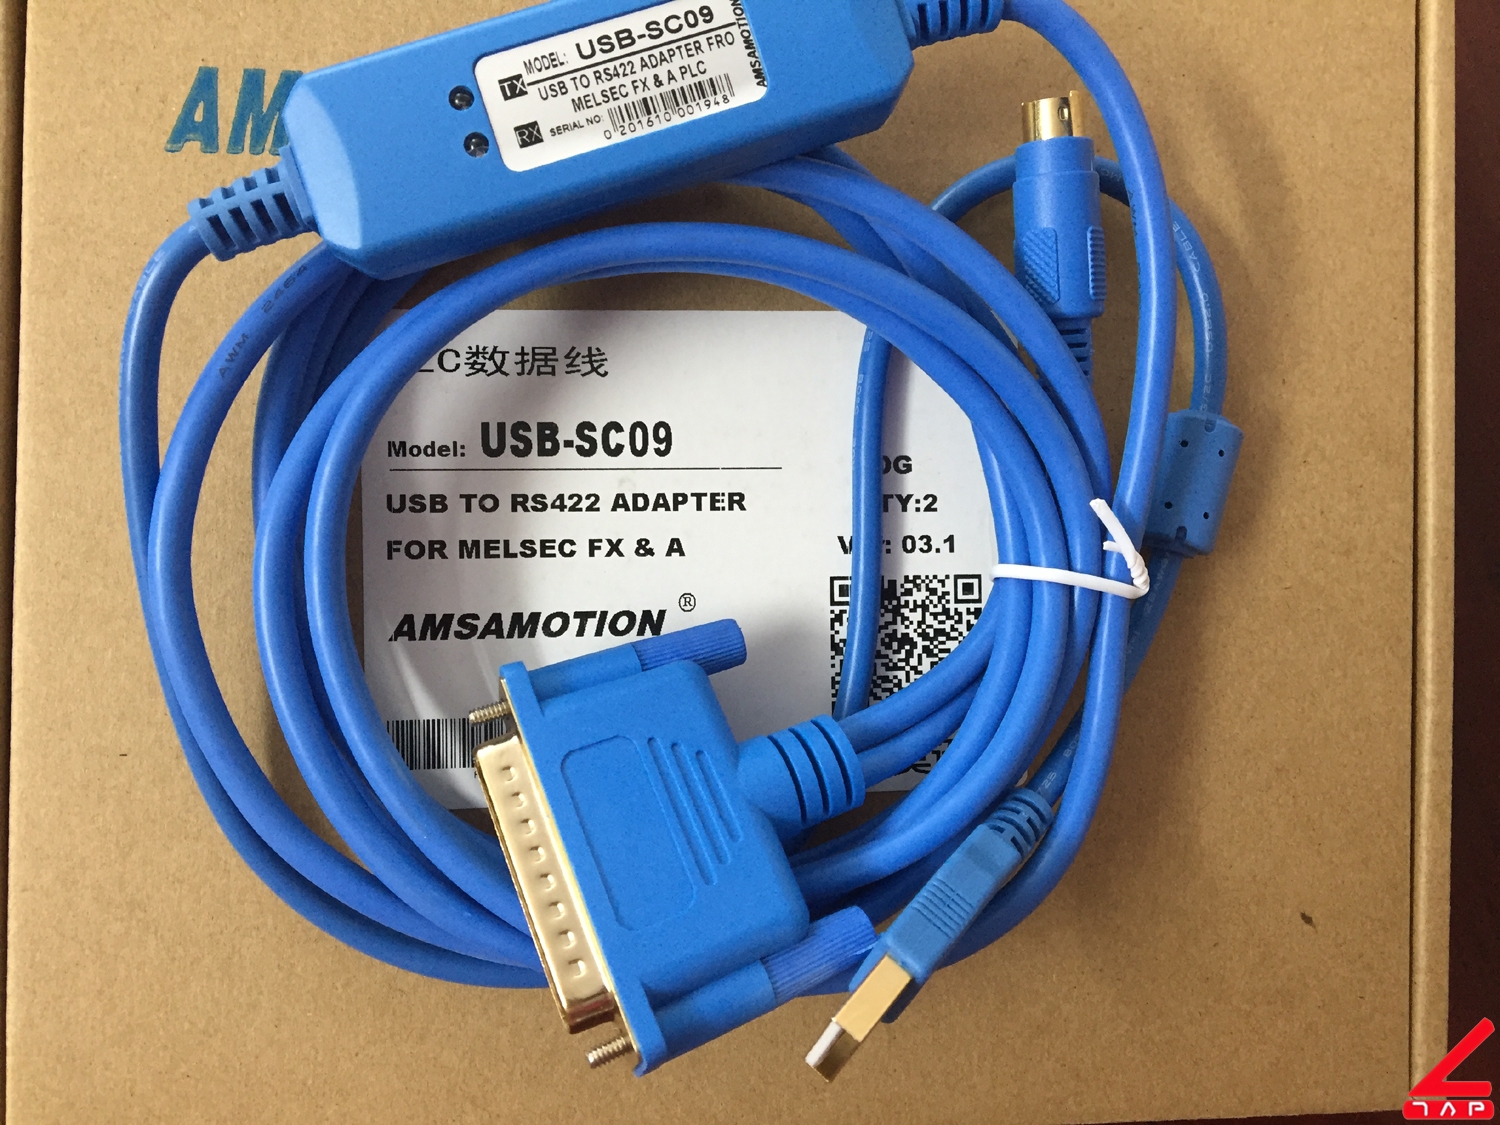 Cable lập trình USB-SC09 cho PLC Mitsubishi FX/A Model: USB-SC09 Giao diện: USB Hệ điều hành tương thích: Windows 2000 / XP / WIN 7, WIN 8. Cable lập trình USB-SC09 sử dụng dễ dàng, dùng cho hầu như tất cả ngôn ngữ lập trình. Gọn nhẹ dễ dàng di chuyển mang theo, lắp đặt. Cable cho phép nạp xóa dễ dàng, chứa được những chương trình phức tạp. Cable lập trình USB-SC09 có tốc độ truyền dữ liệu nhanh, độ chính xác cao. Chất liệu nhựa cao cấp, dây cáp mềm. Nhiệt độ làm việc: -20 ~ + 75 ℃. Chiều dài cáp: 3 m. Cable màu vàng. Cáp lập trình USB-SC09 cho PLC Mitsubishi FX/A Cable lập trình USB-SC09 cho PLC Mitsubishi FX/A